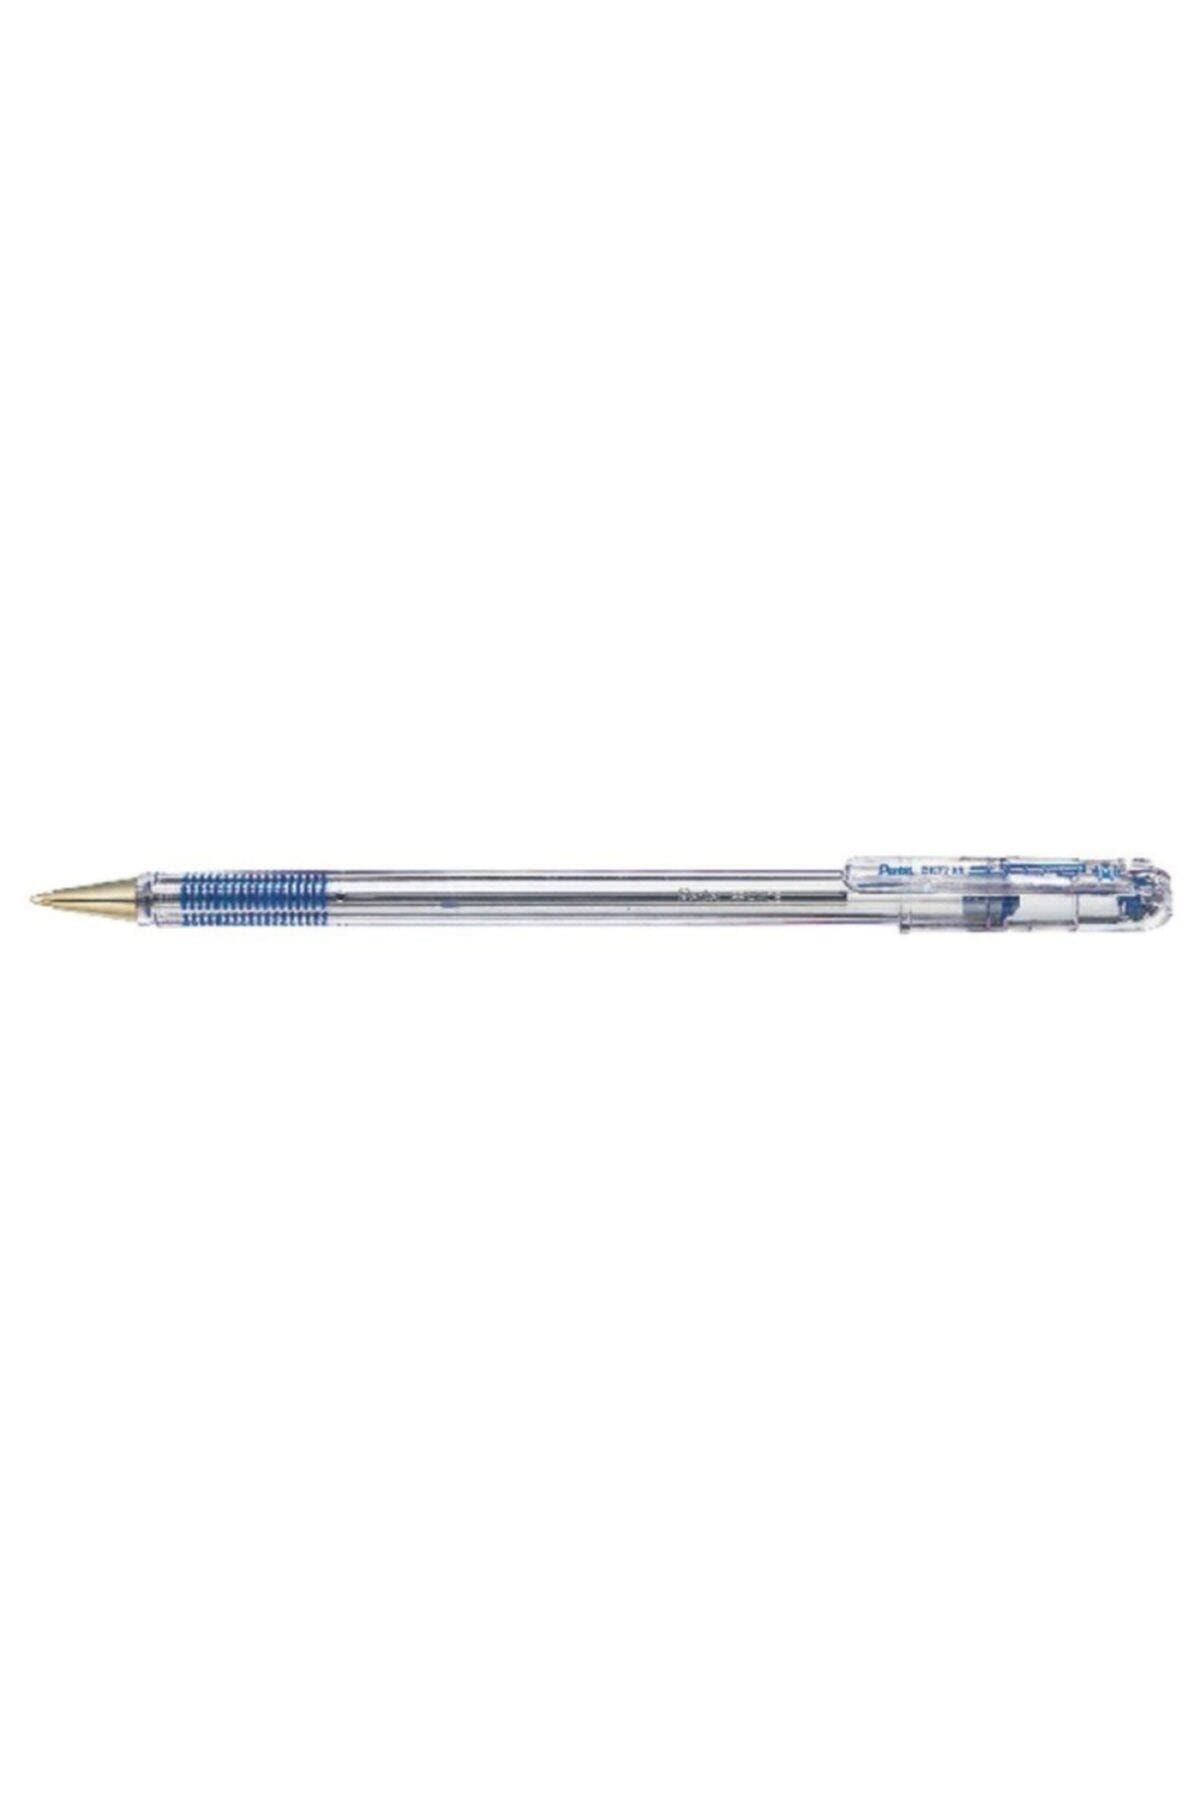 Pentel Bk77-C Tükenmez Kalem Superb Yağ Bazlı Roller Kalem 0.7 Mm Mavi (12 Li Kutu)